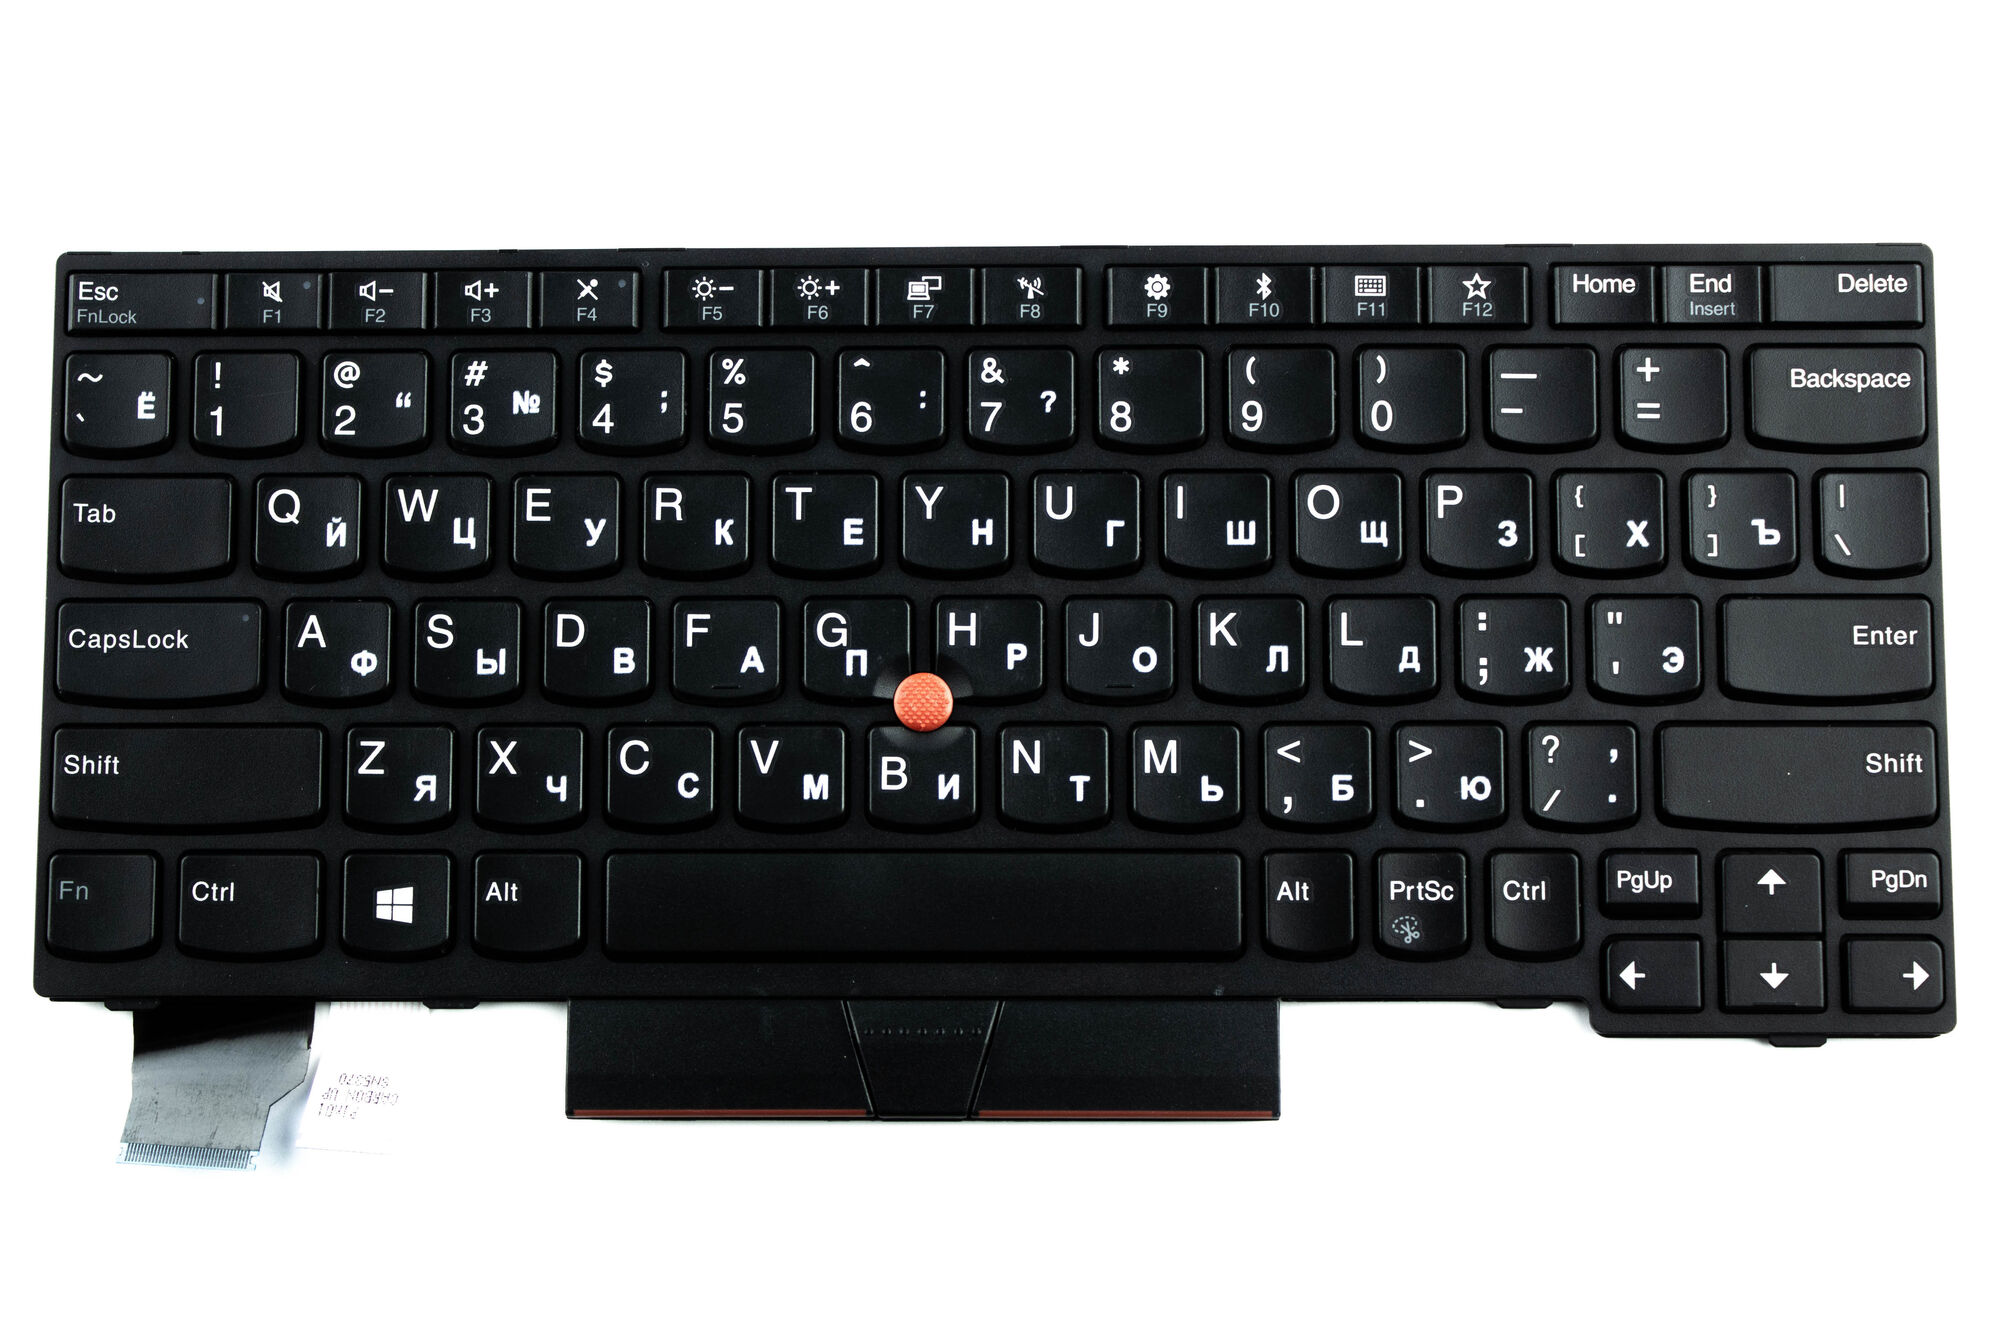 Клавиатура для ноутбука Lenovo X280 X390 p/n: 01YP200 SN20P33911 01YP120